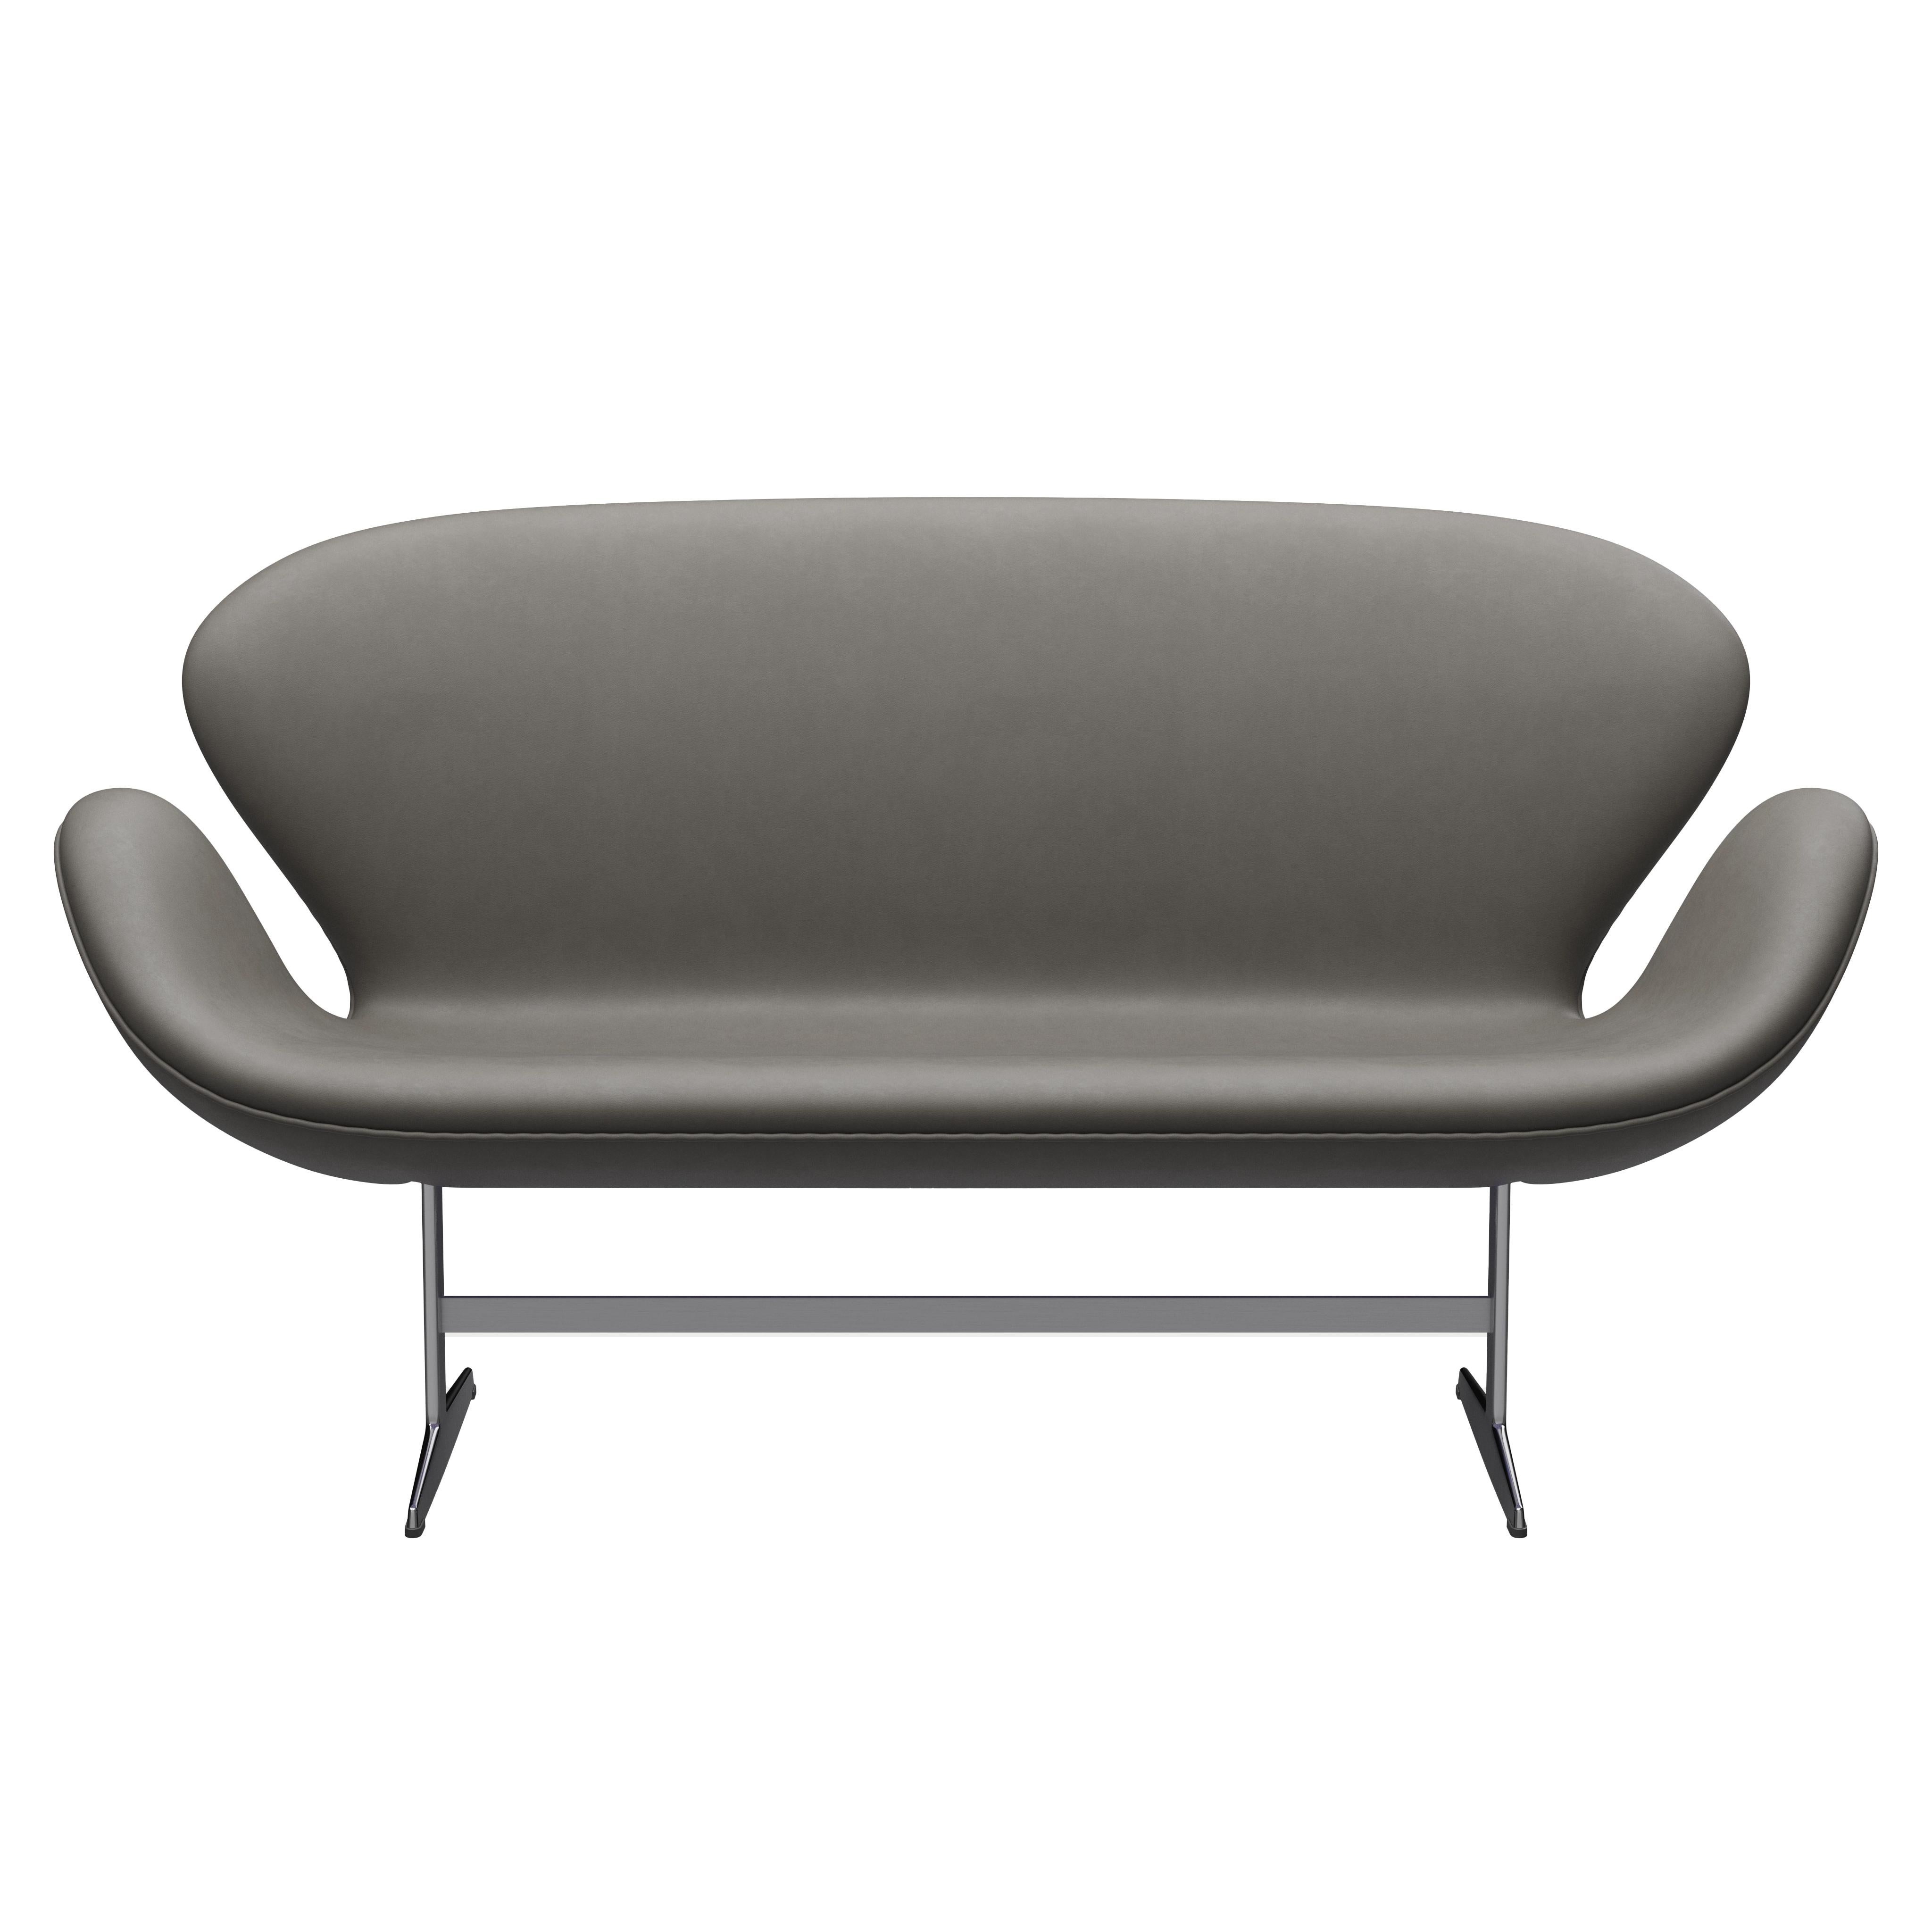 Arne Jacobsen 'Swan' Sofa for Fritz Hansen in Leather Upholstery (Cat. 3) For Sale 2